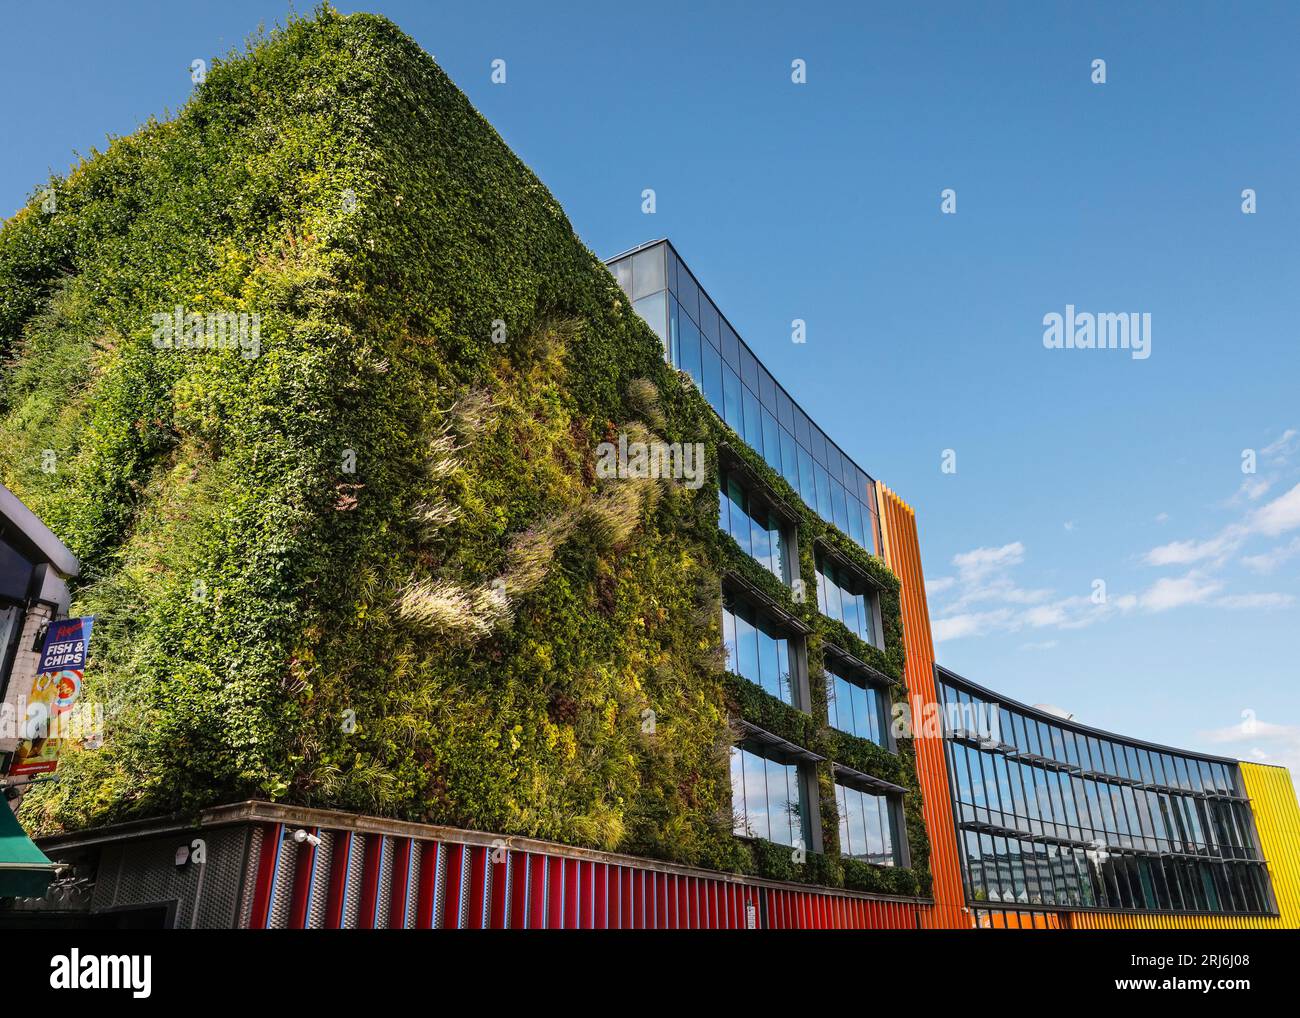 Living wall and green facade, planted building exterior, MTV Studios, Camden, Camden Town, London, England Stock Photo